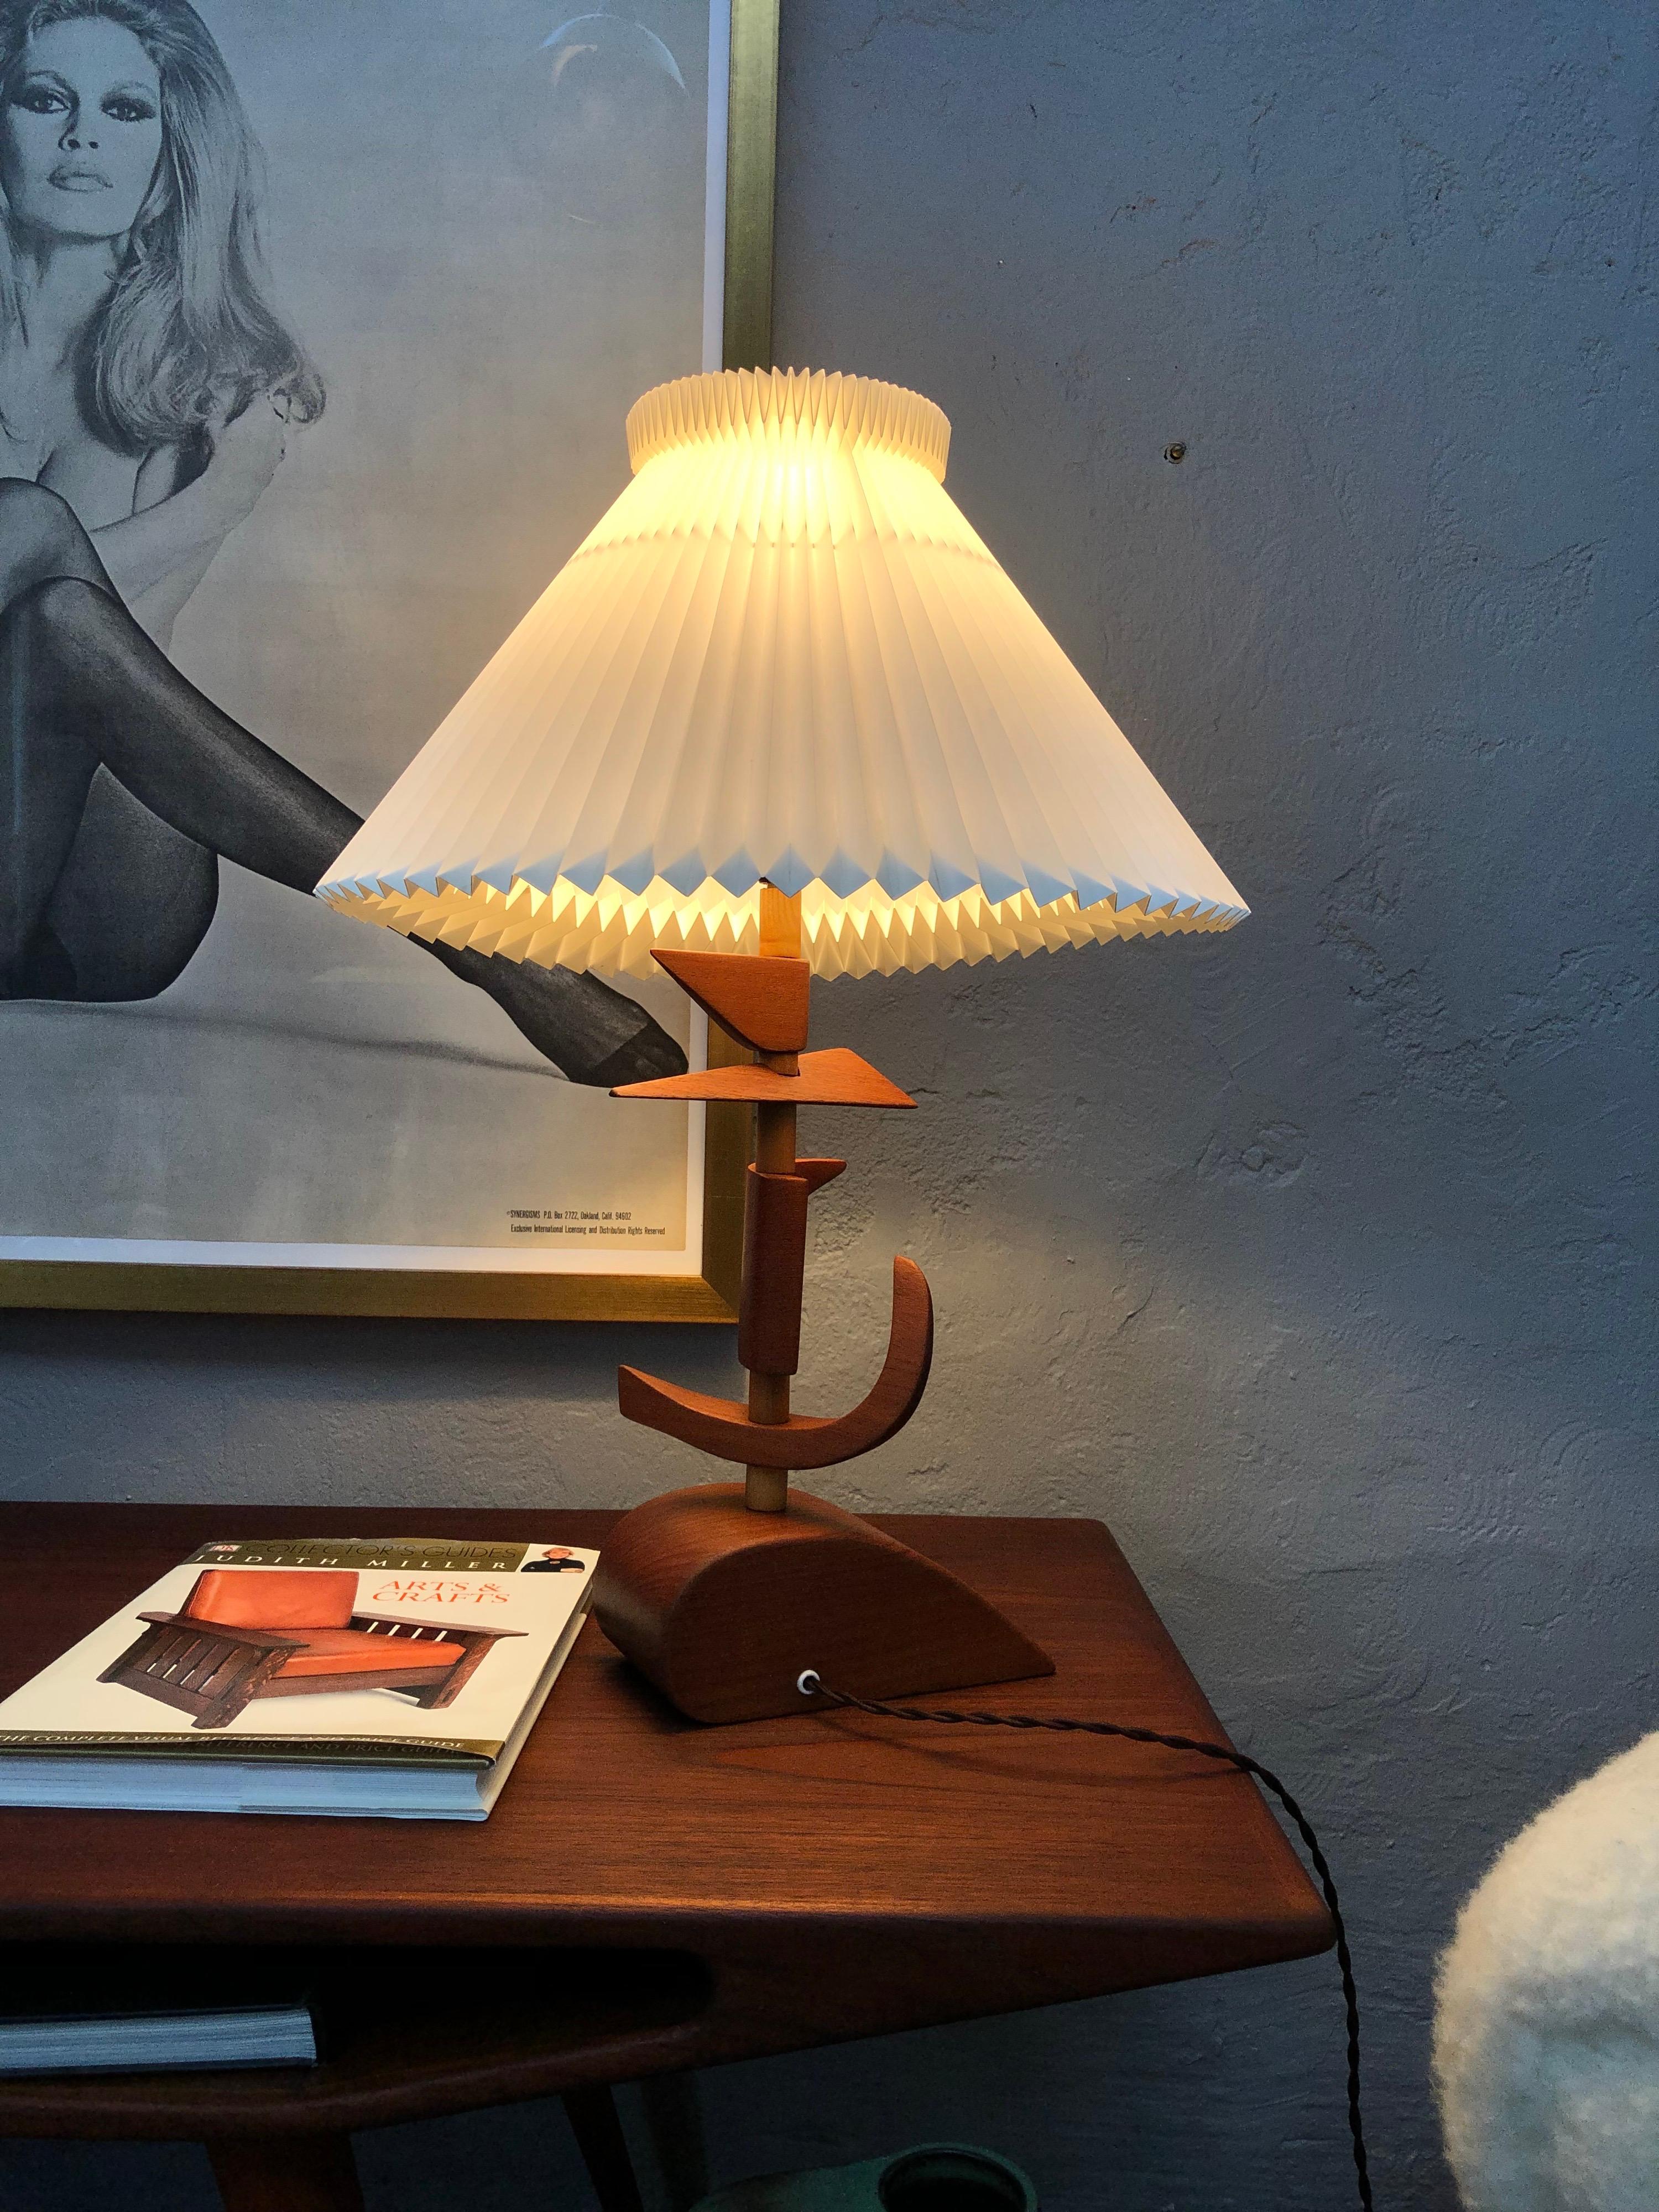 Lampe de table en teck, prototype de l'artisan danois, Vintage Mid-Century Modern.
Il s'agit d'une lampe étonnante que j'ai eu beaucoup de plaisir à rénover.
La lampe ne peut être que l'une des deux choses suivantes. Il s'agit soit d'un prototype,